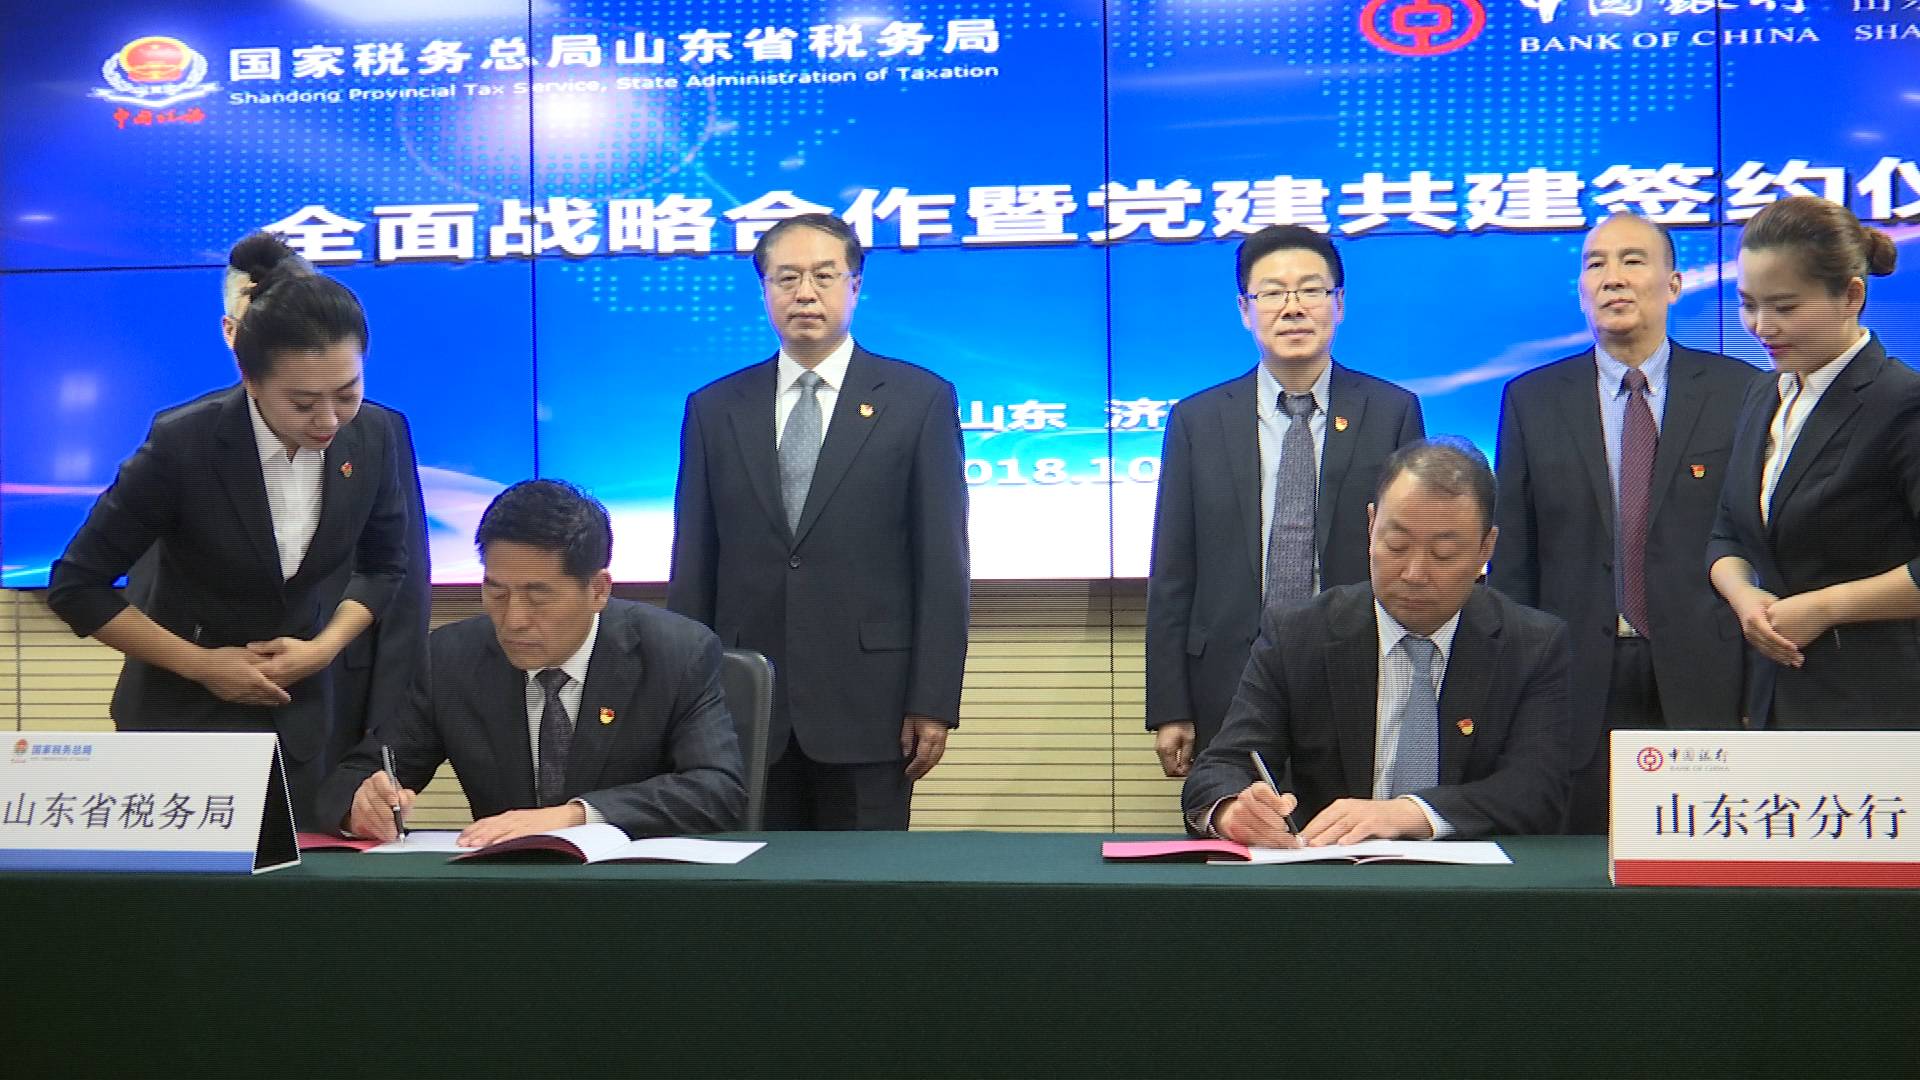 国家税务总局山东省税务局与中国银行山东省分行签订全面战略合作协议